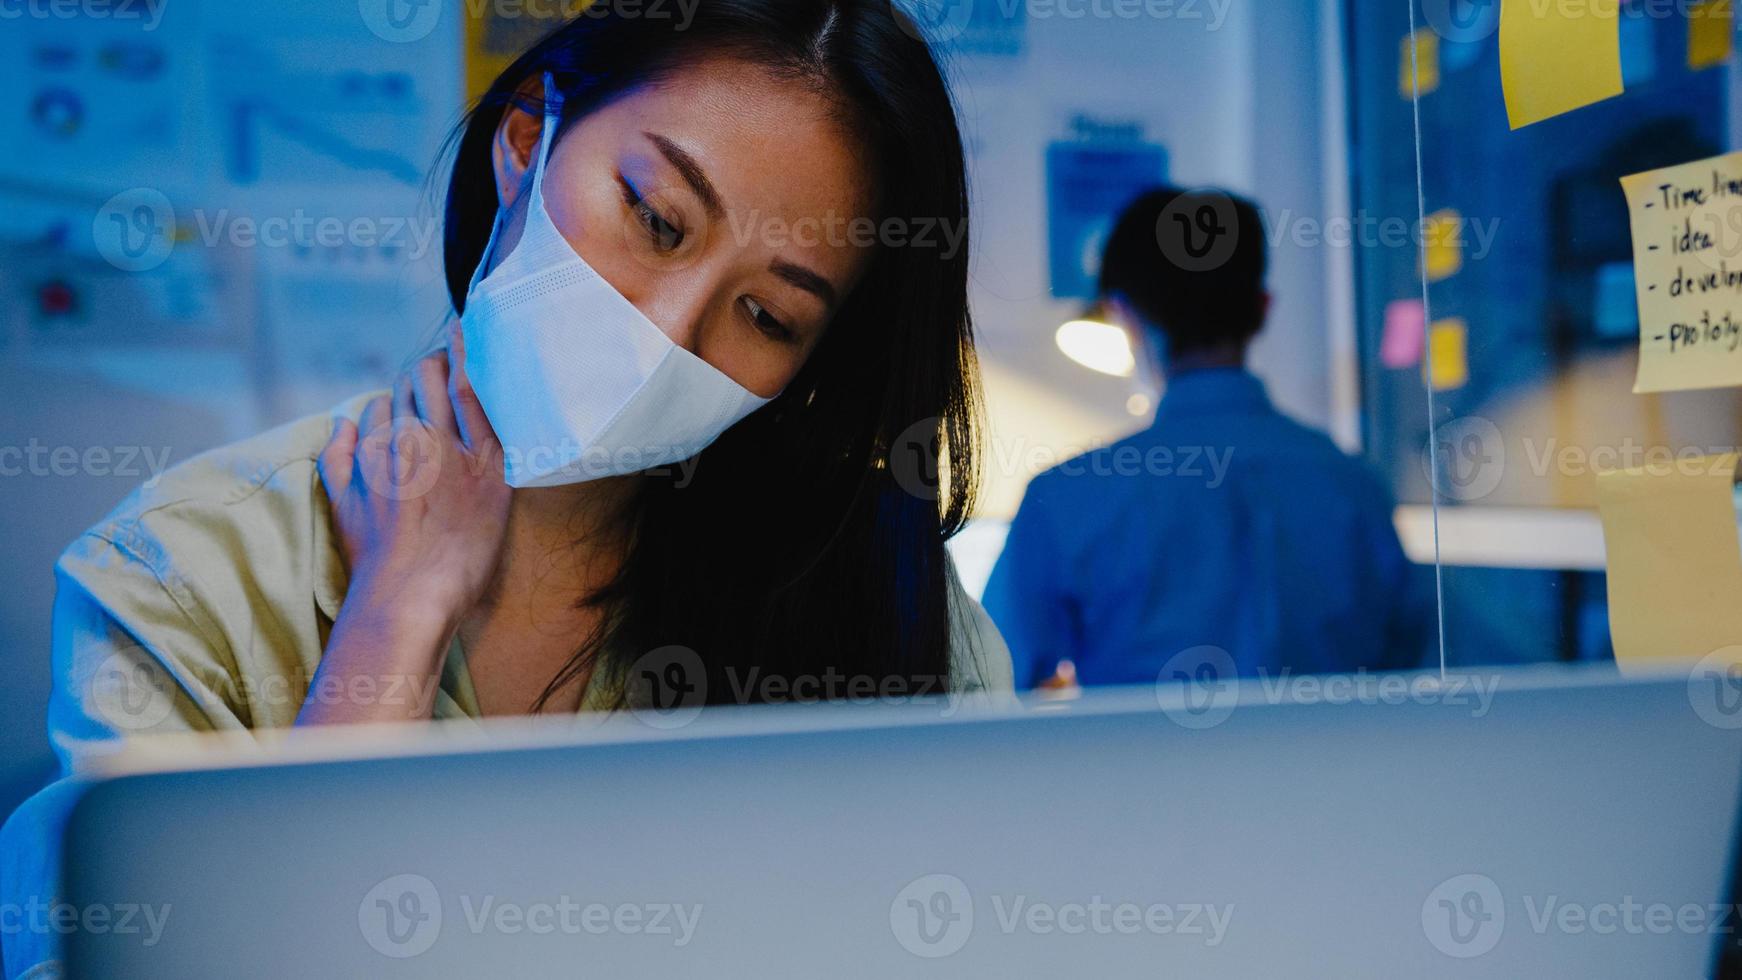 stressata, stanca, giovane donna asiatica, indossa una maschera facciale usando il computer portatile, lavoro duro con sindrome da ufficio, dolore al collo, mentre fa gli straordinari in ufficio. lavoro da casa sovraccarico di notte, distanza sociale. foto